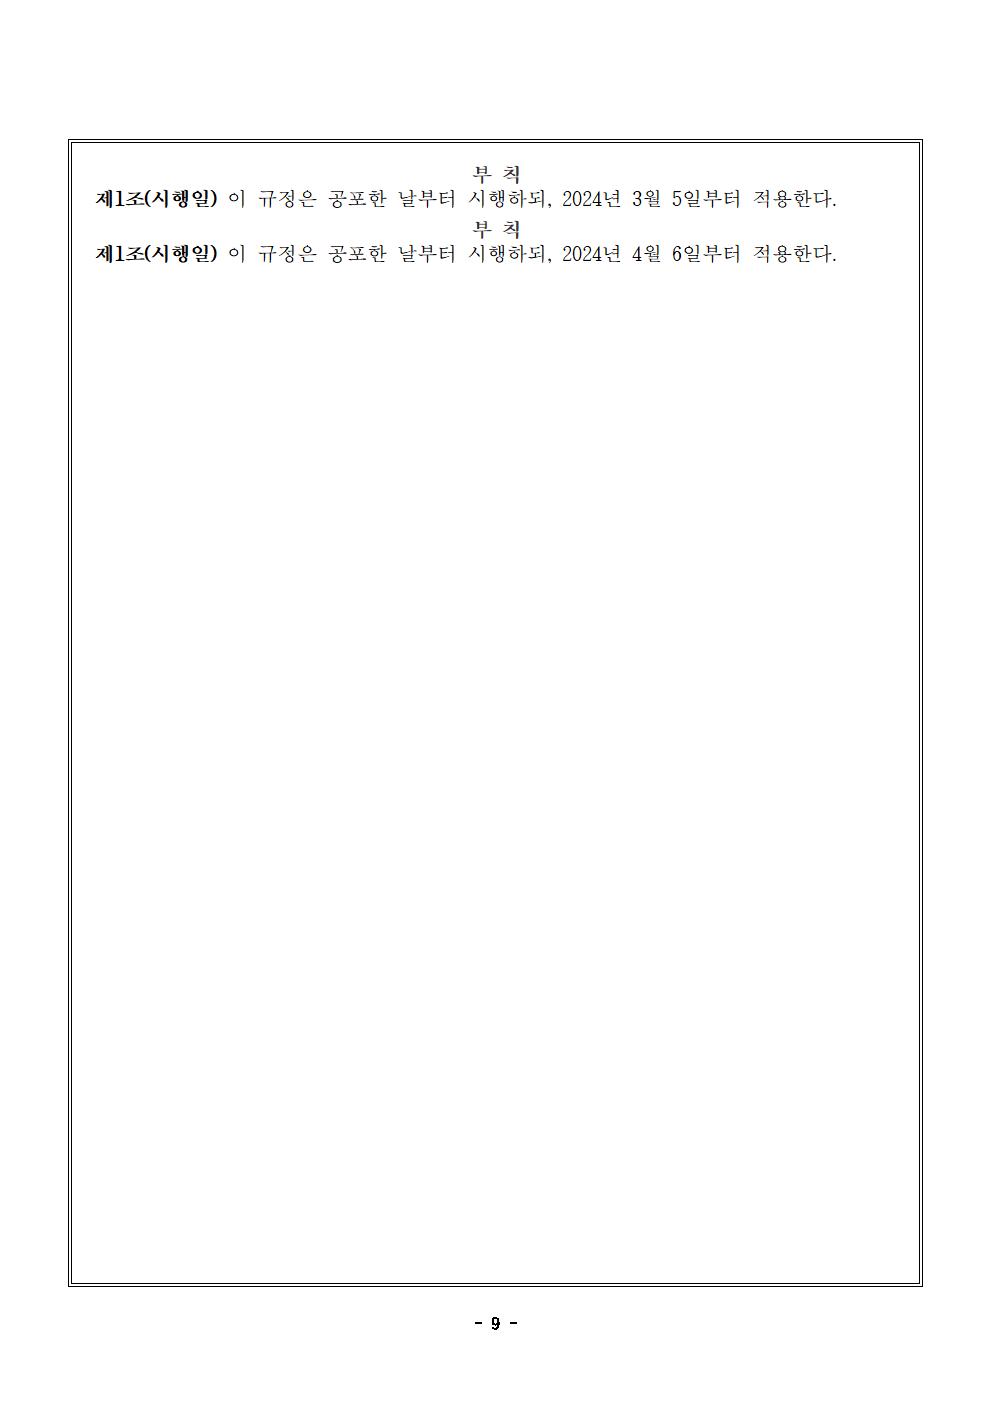 맹동초등학교운영위원회 규정 일부개정-2024.4.6.시행009